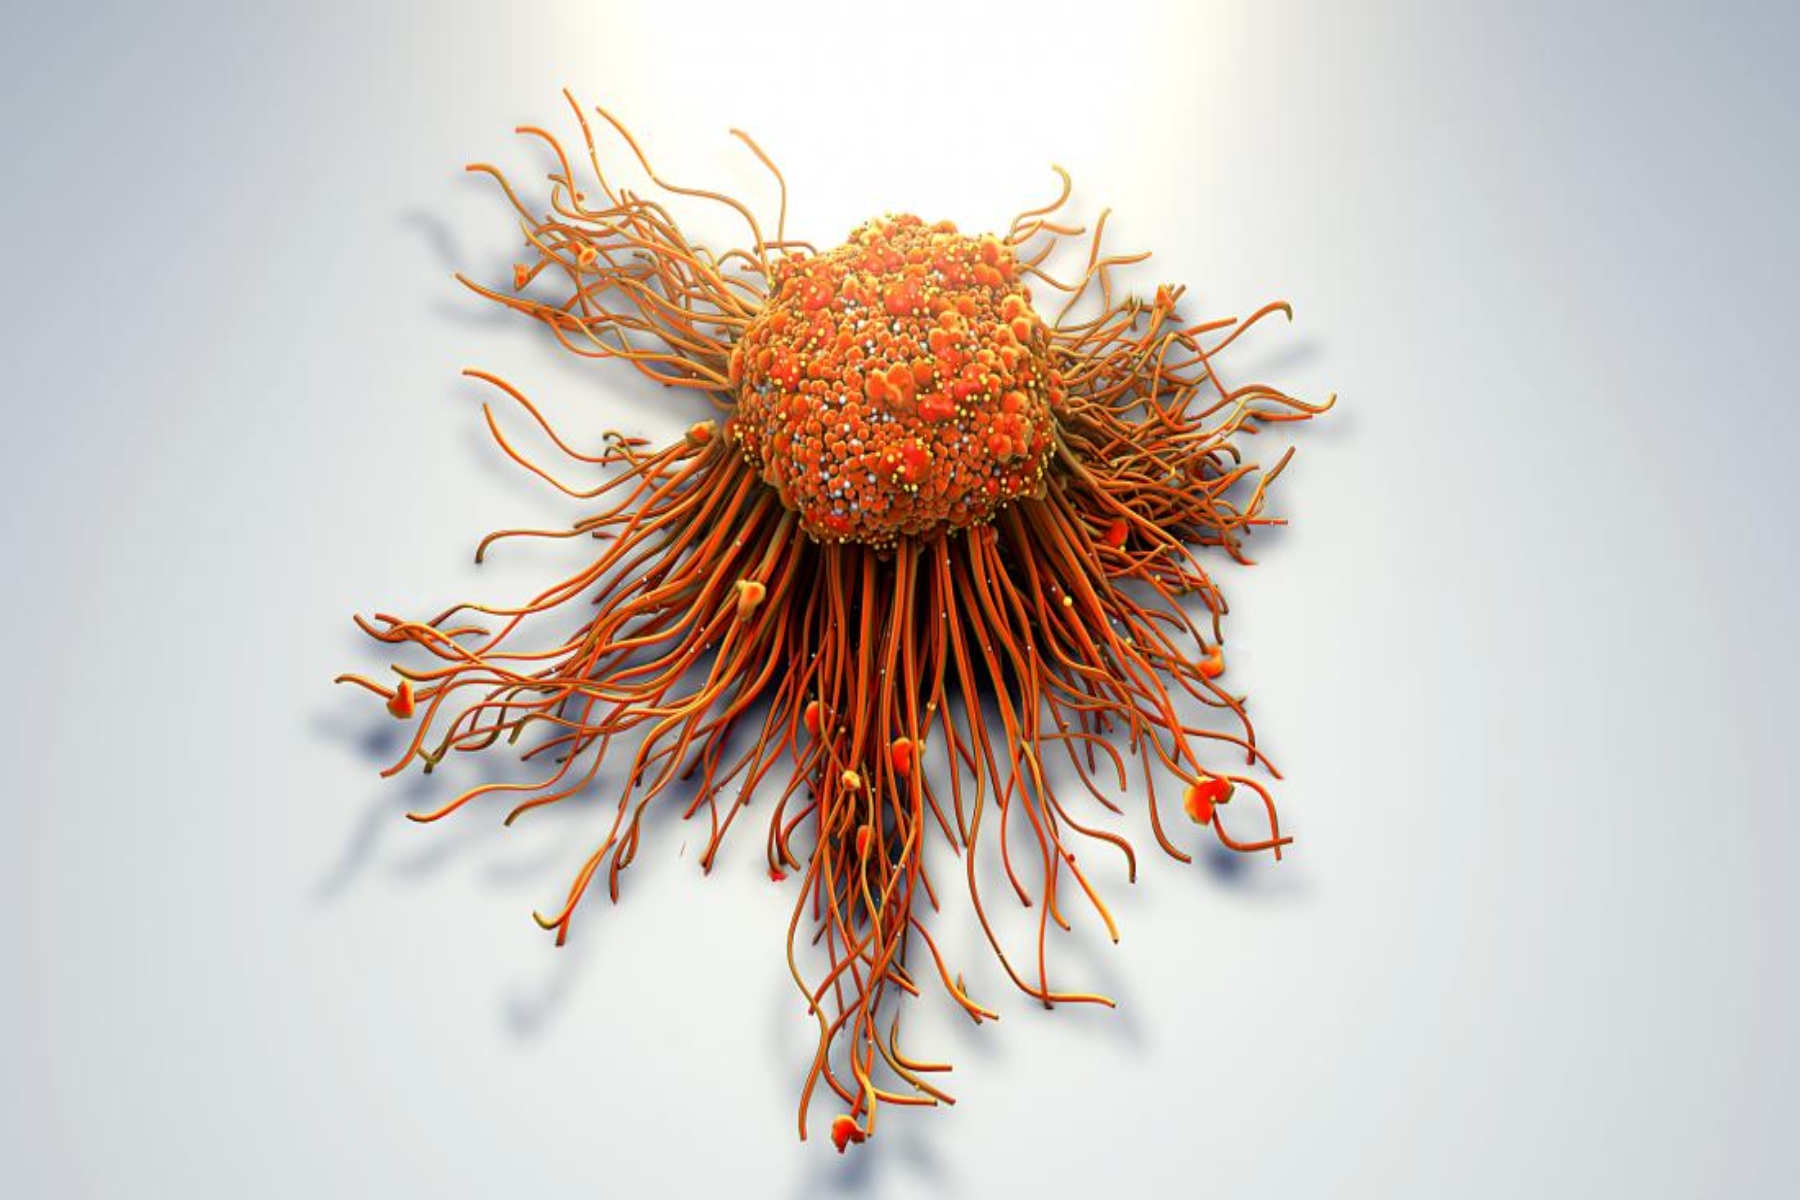 Μετάσταση καρκίνος: Περιορισμός ανάπτυξης των μεταστατικών καρκινικών κυττάρων